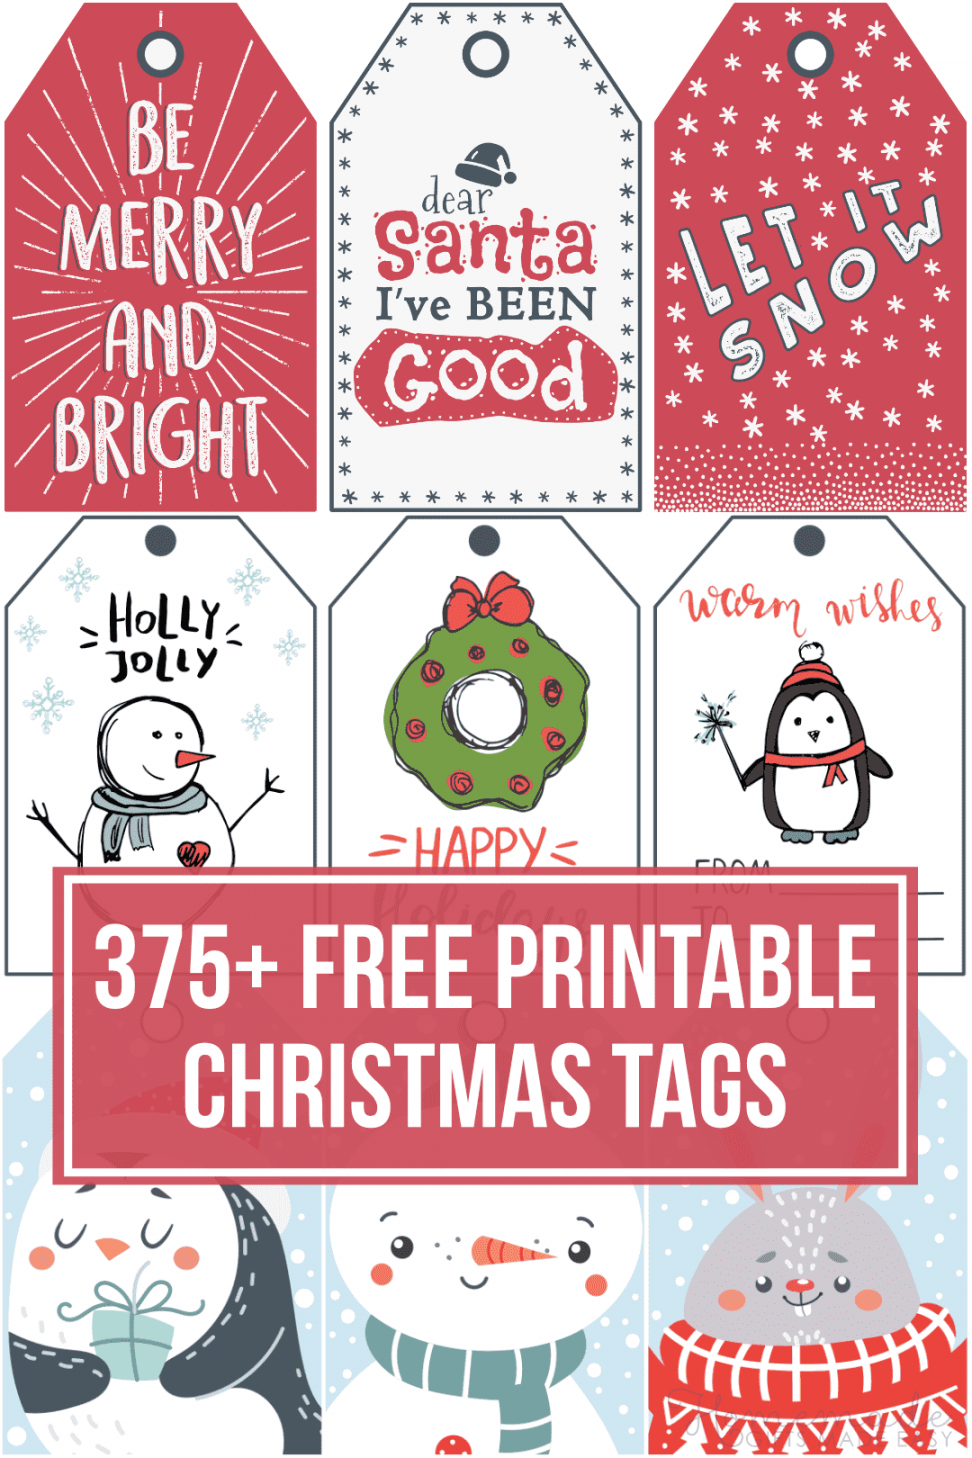 + Free Printable Christmas Tags for your Holiday Gifts - FREE Printables - Christmas Tags Free Printable